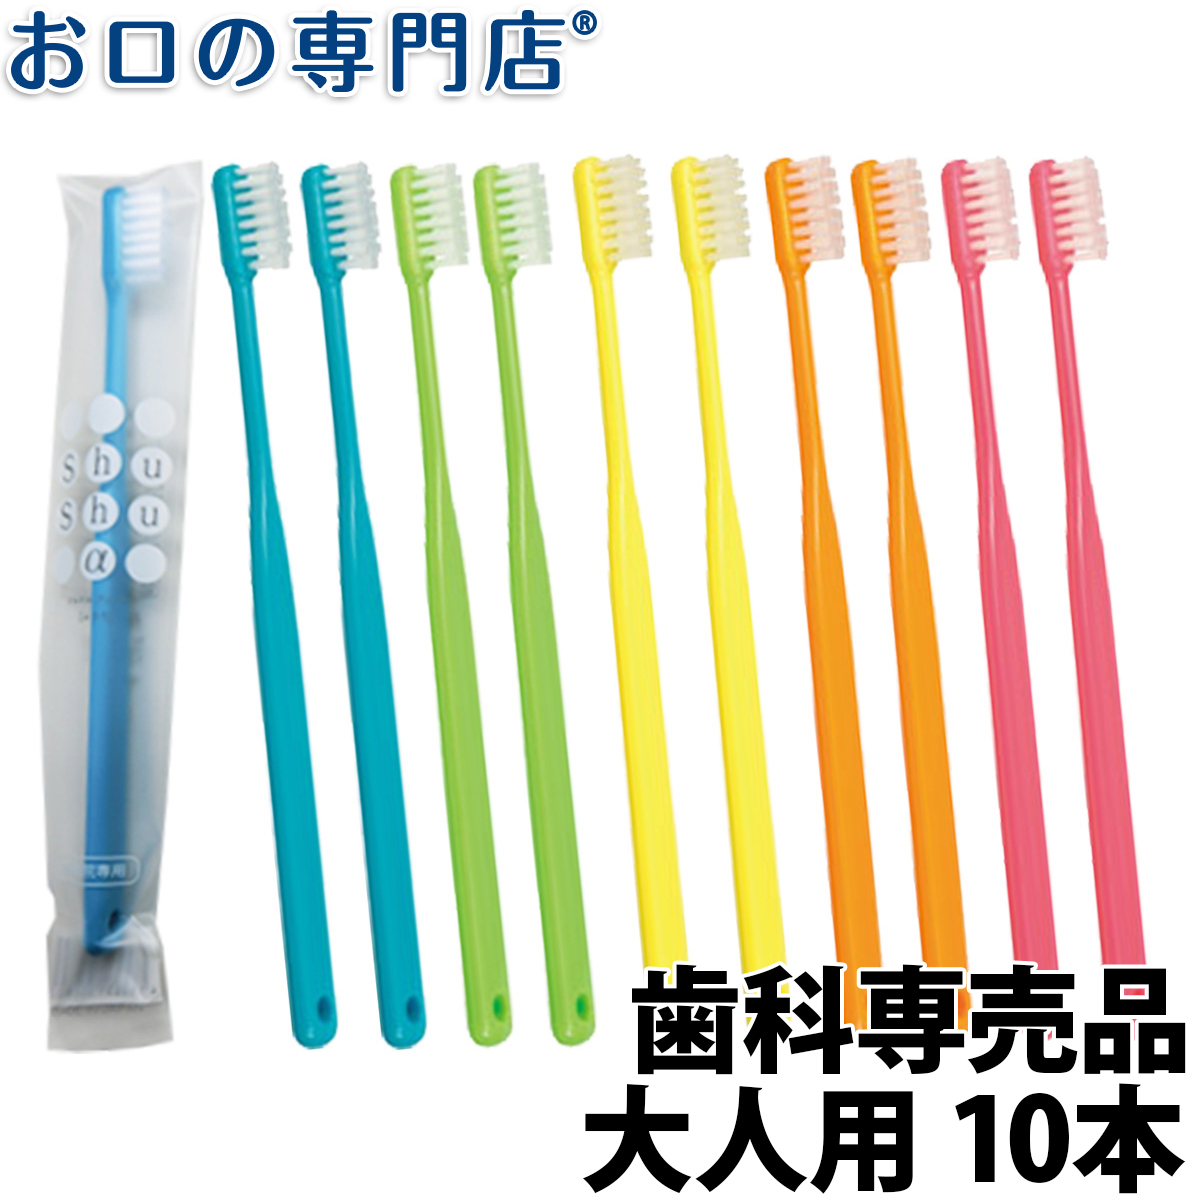 日本正規代理店品 大人用 歯ブラシ やわらかめ 20本 shushu α シュシュ